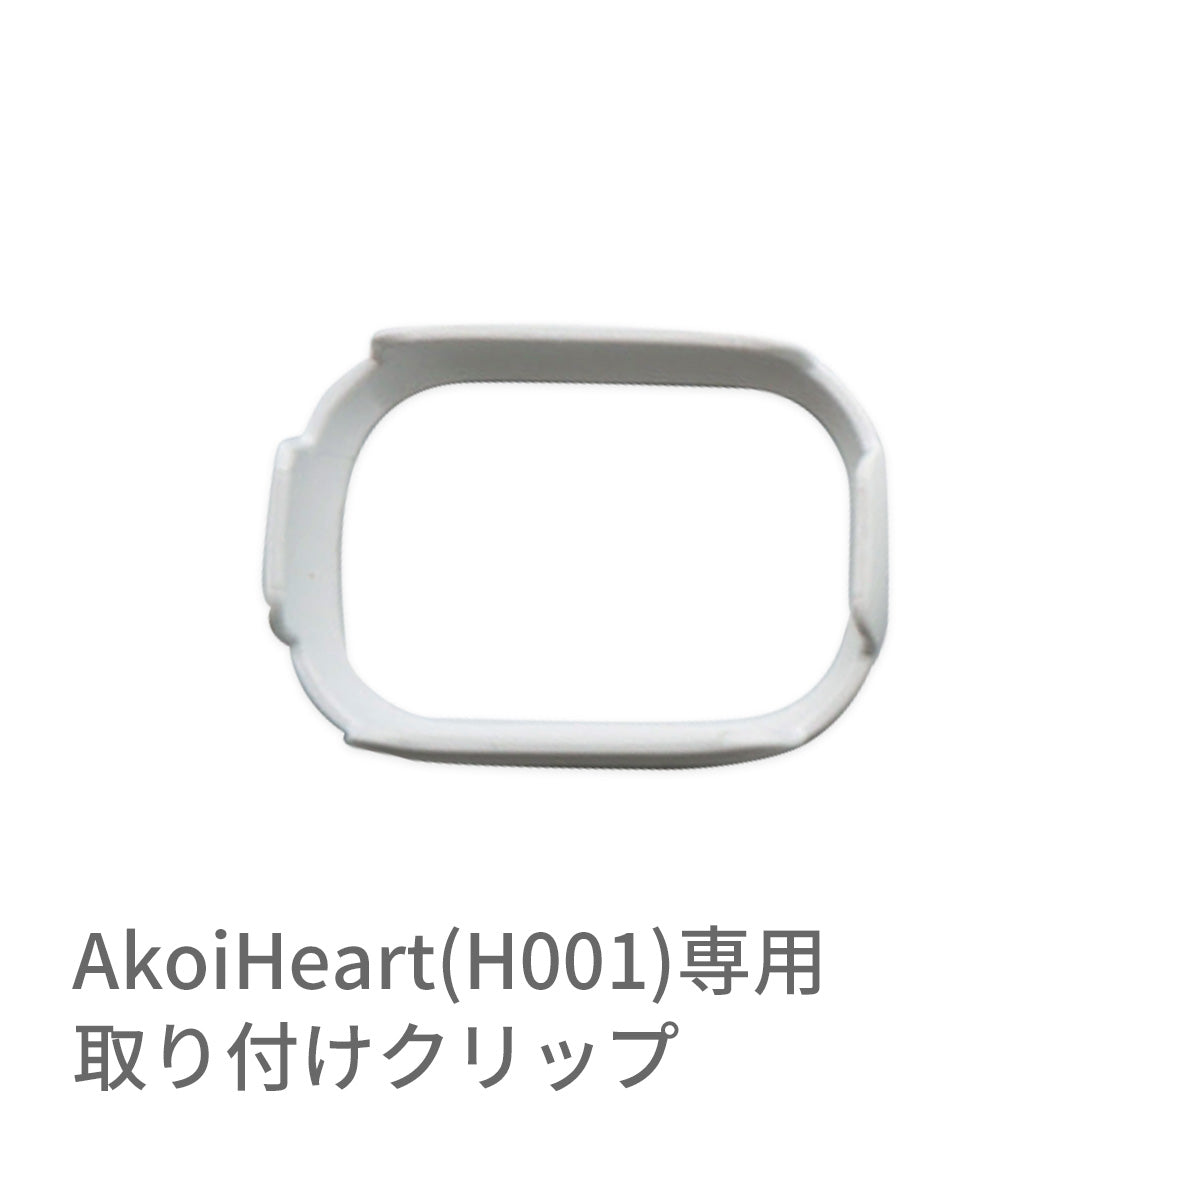 AKOi Heart専用 取り付けキャップ ※代引き不可 – Hariti